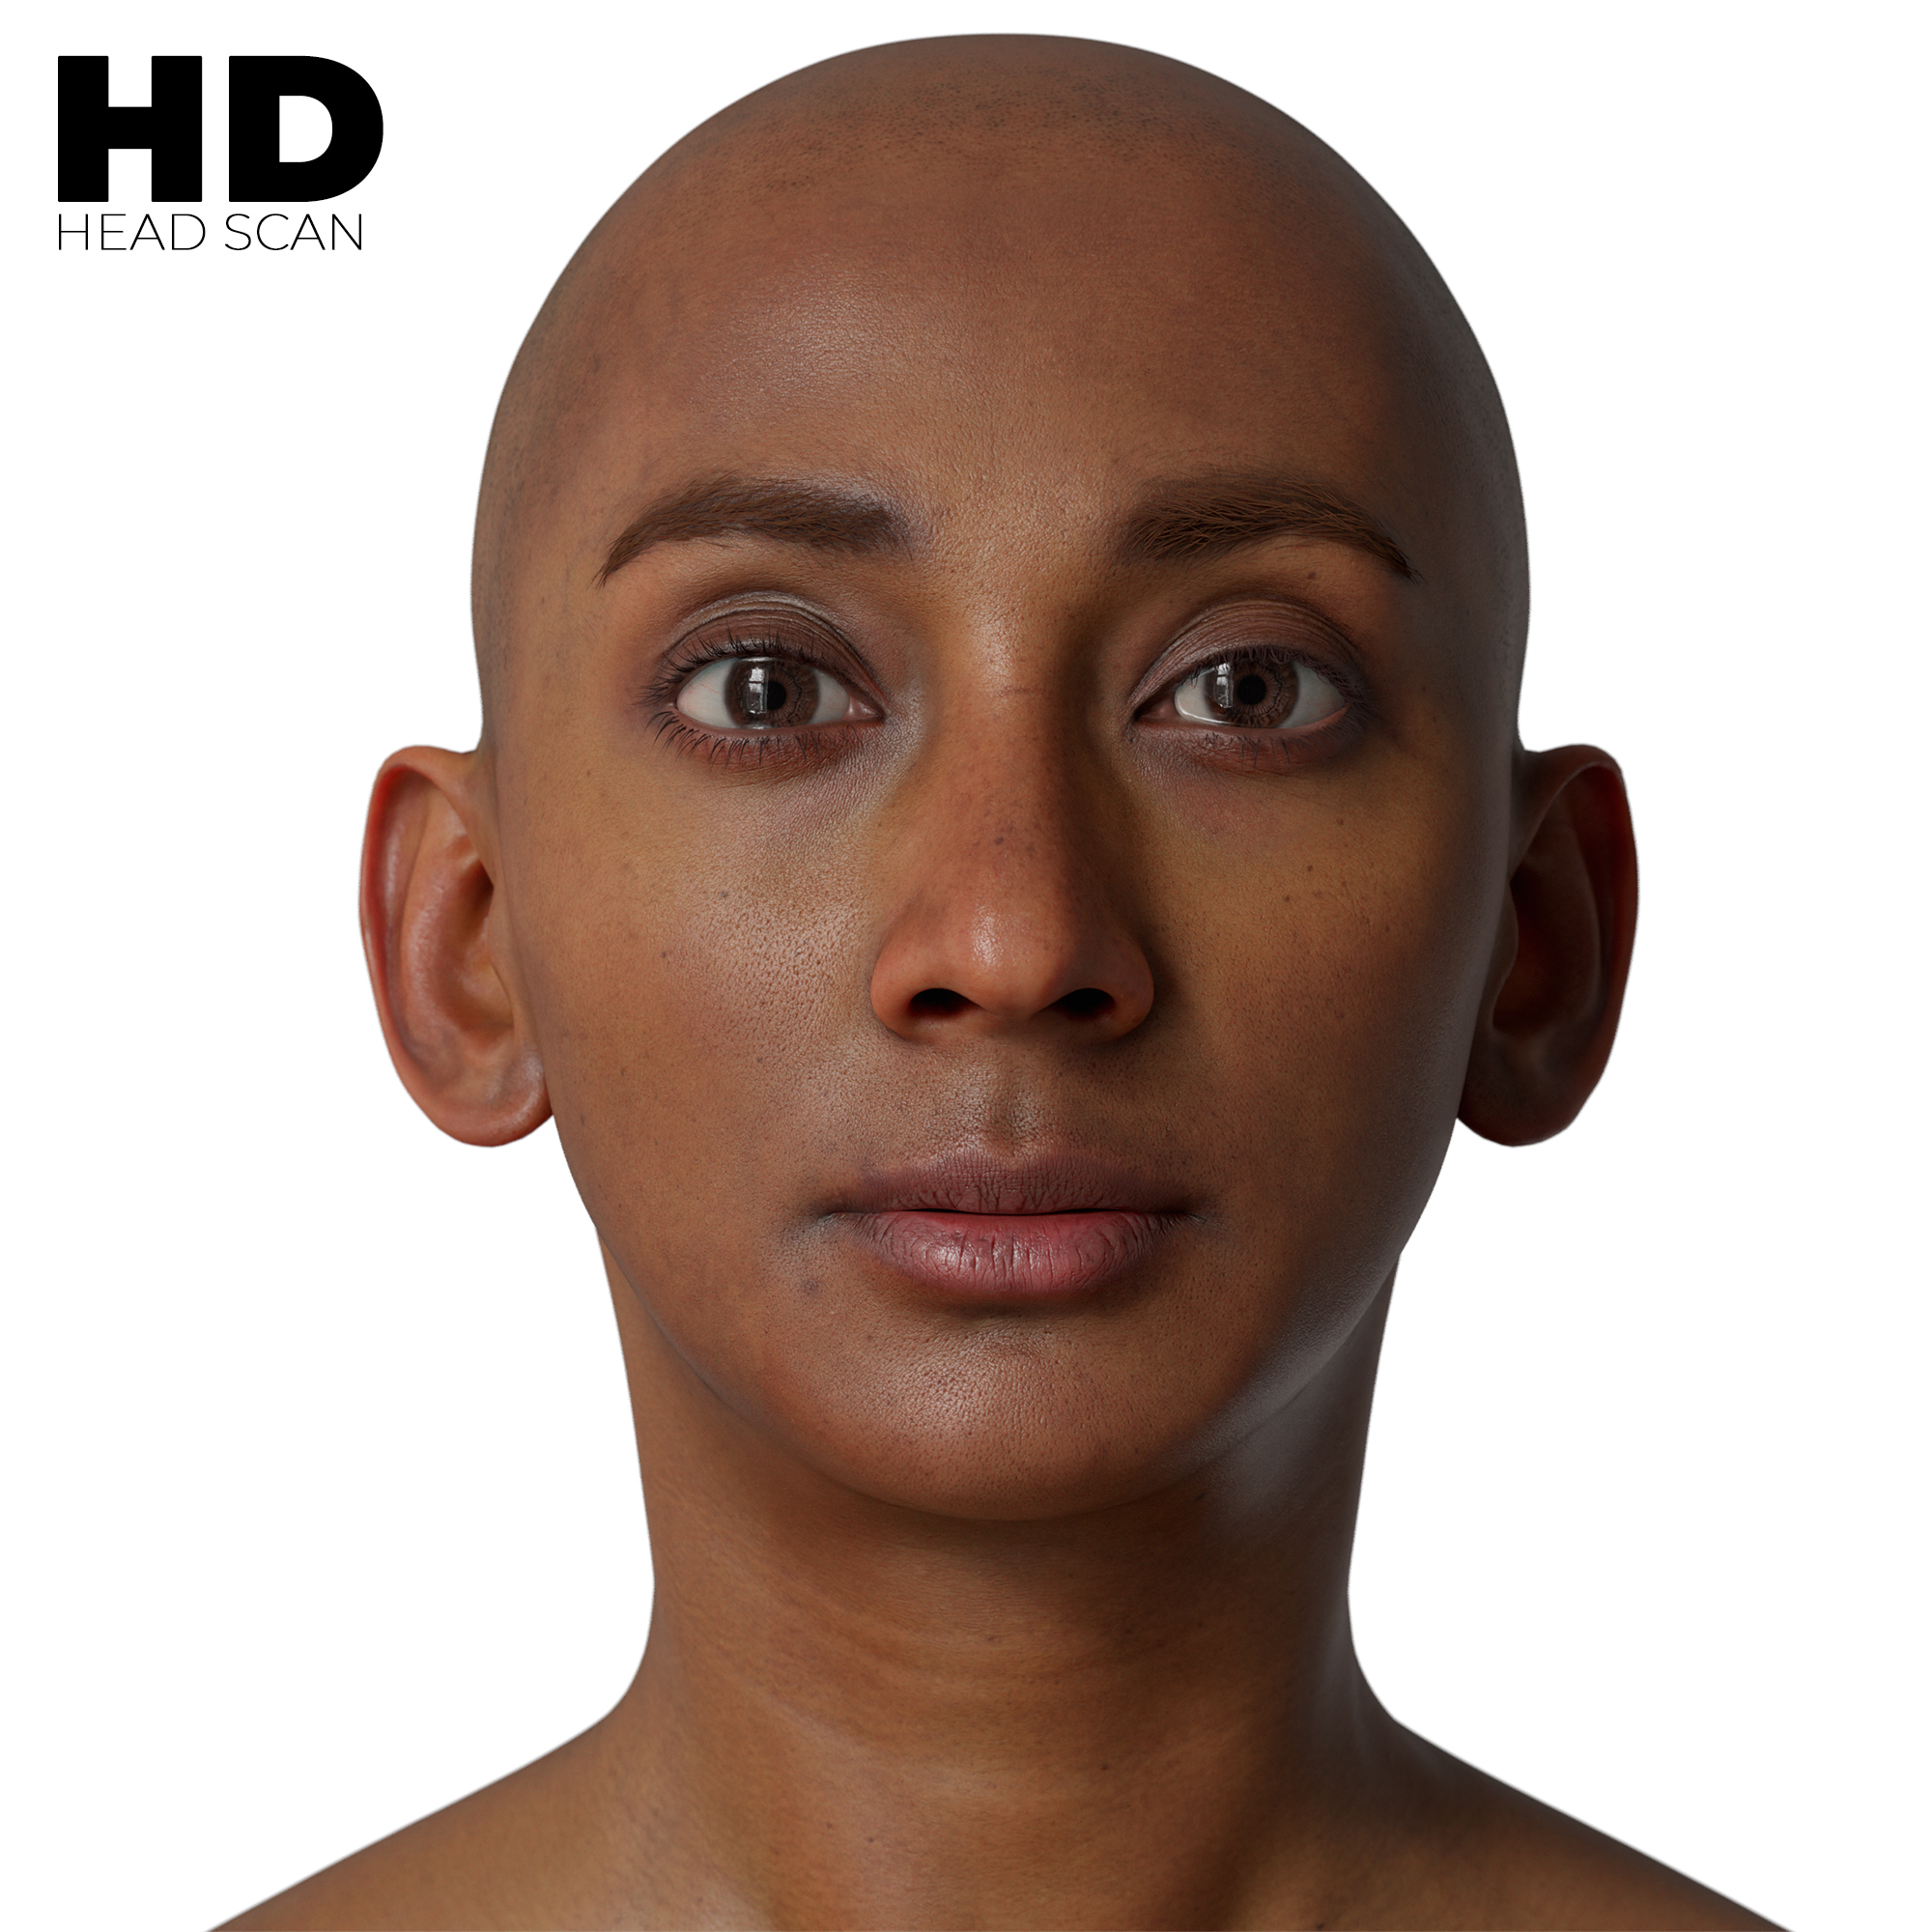 3D Human Models